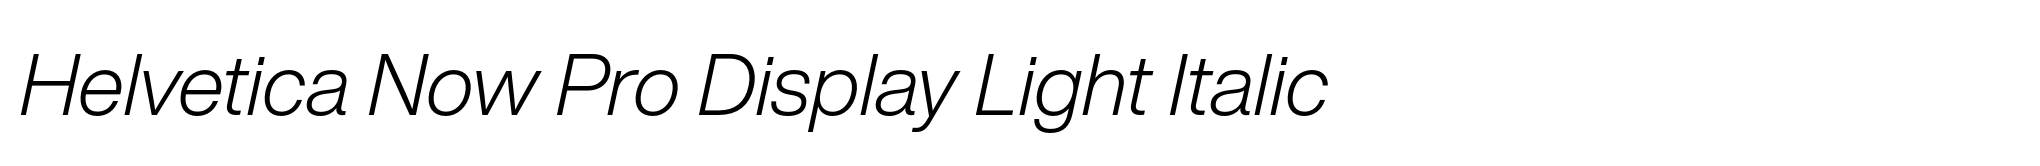 Helvetica Now Pro Display Light Italic image